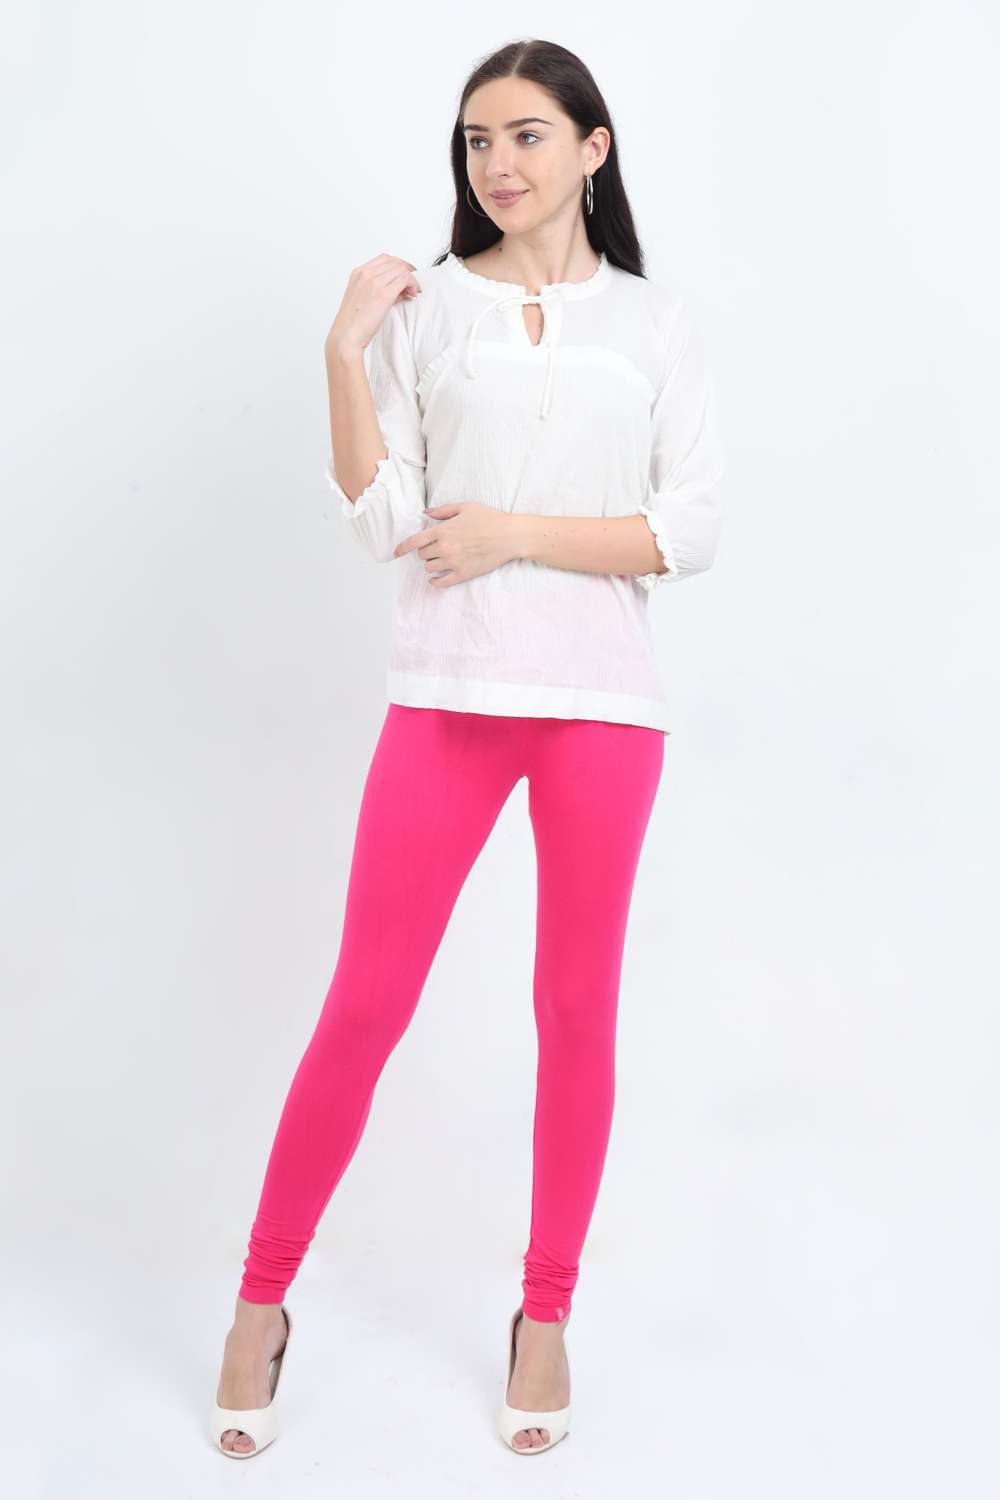 Women's Cotton Lycra Hot Pink Full length legging | sandgrouse